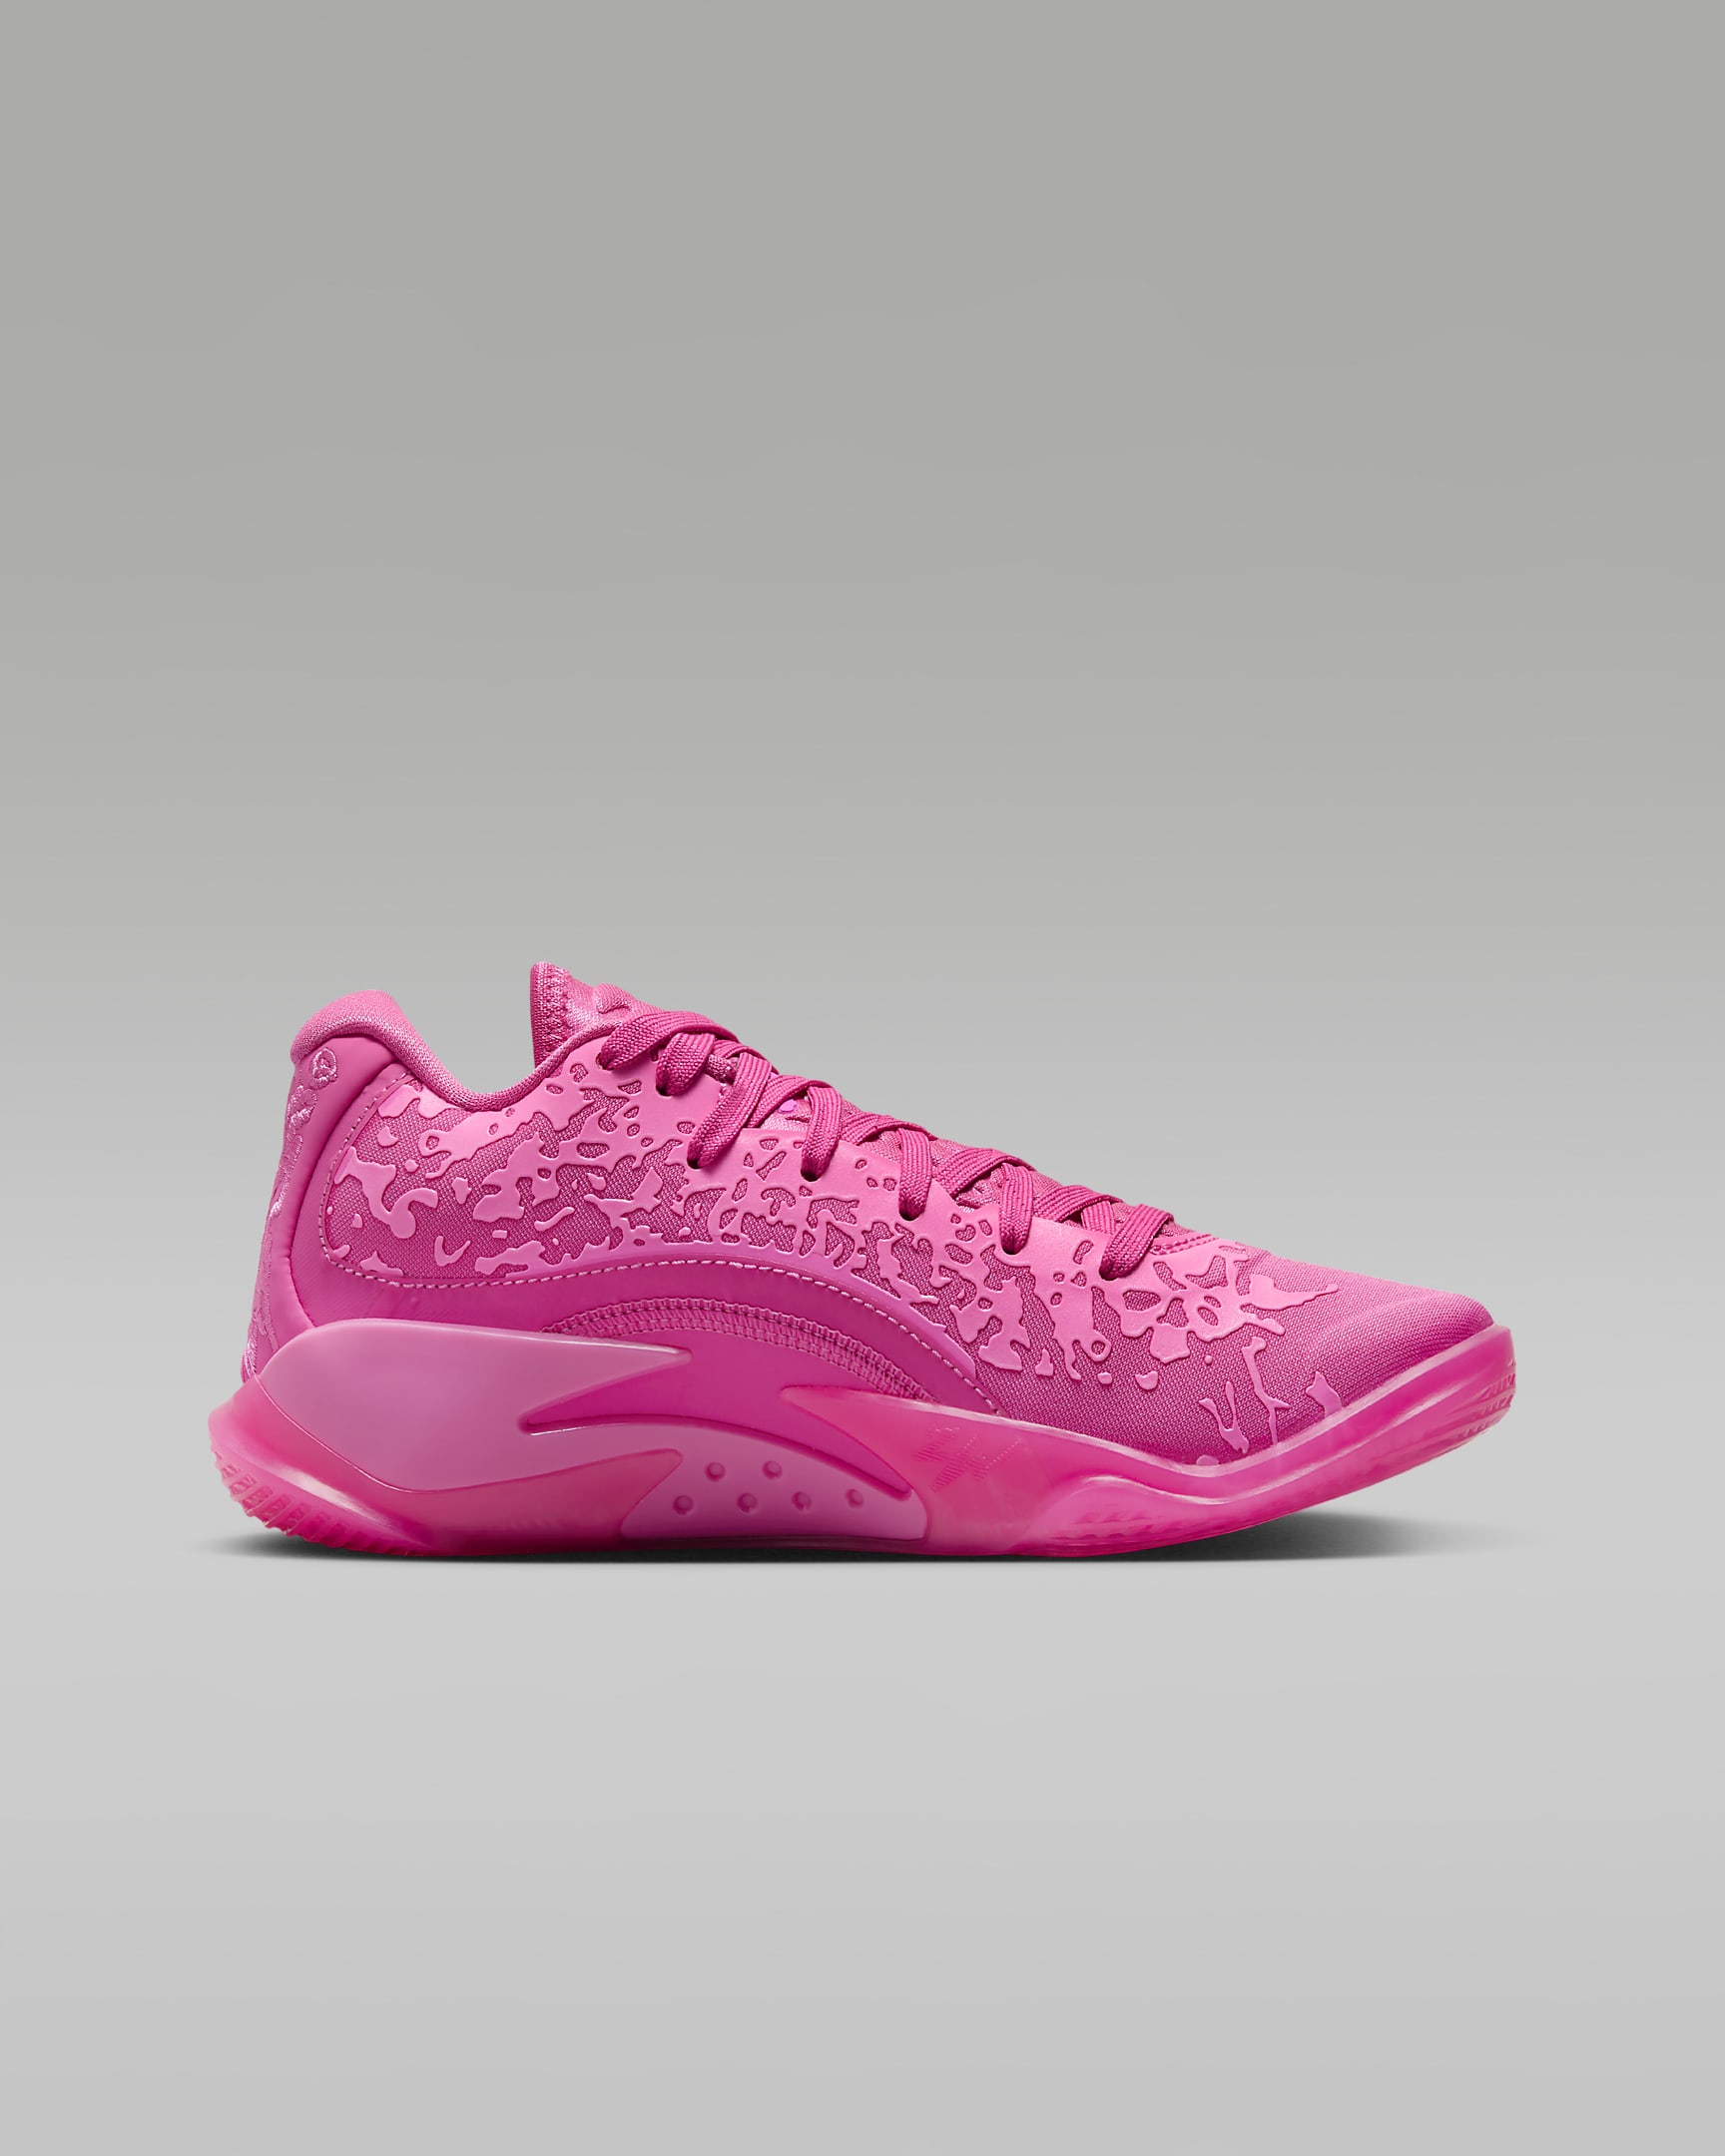 Zion 3 kosárlabdacipő nagyobb gyerekeknek - Pinksicle/Pink Glow/Pink Spell